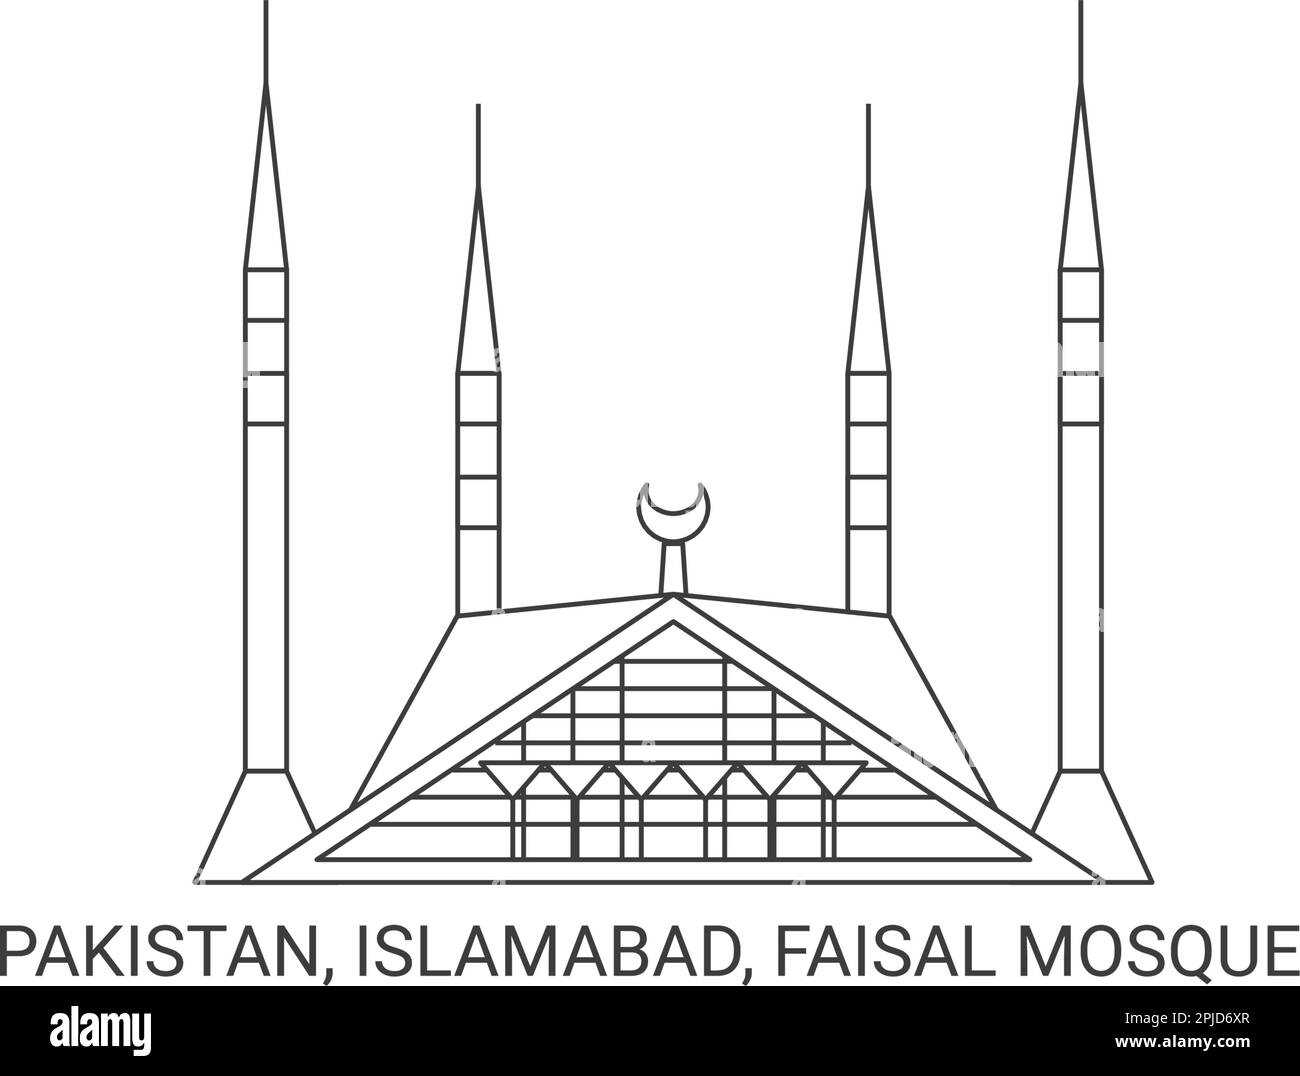 Pakistan, Islamabad, Faisal Mosque, travel landmark vector illustration ...